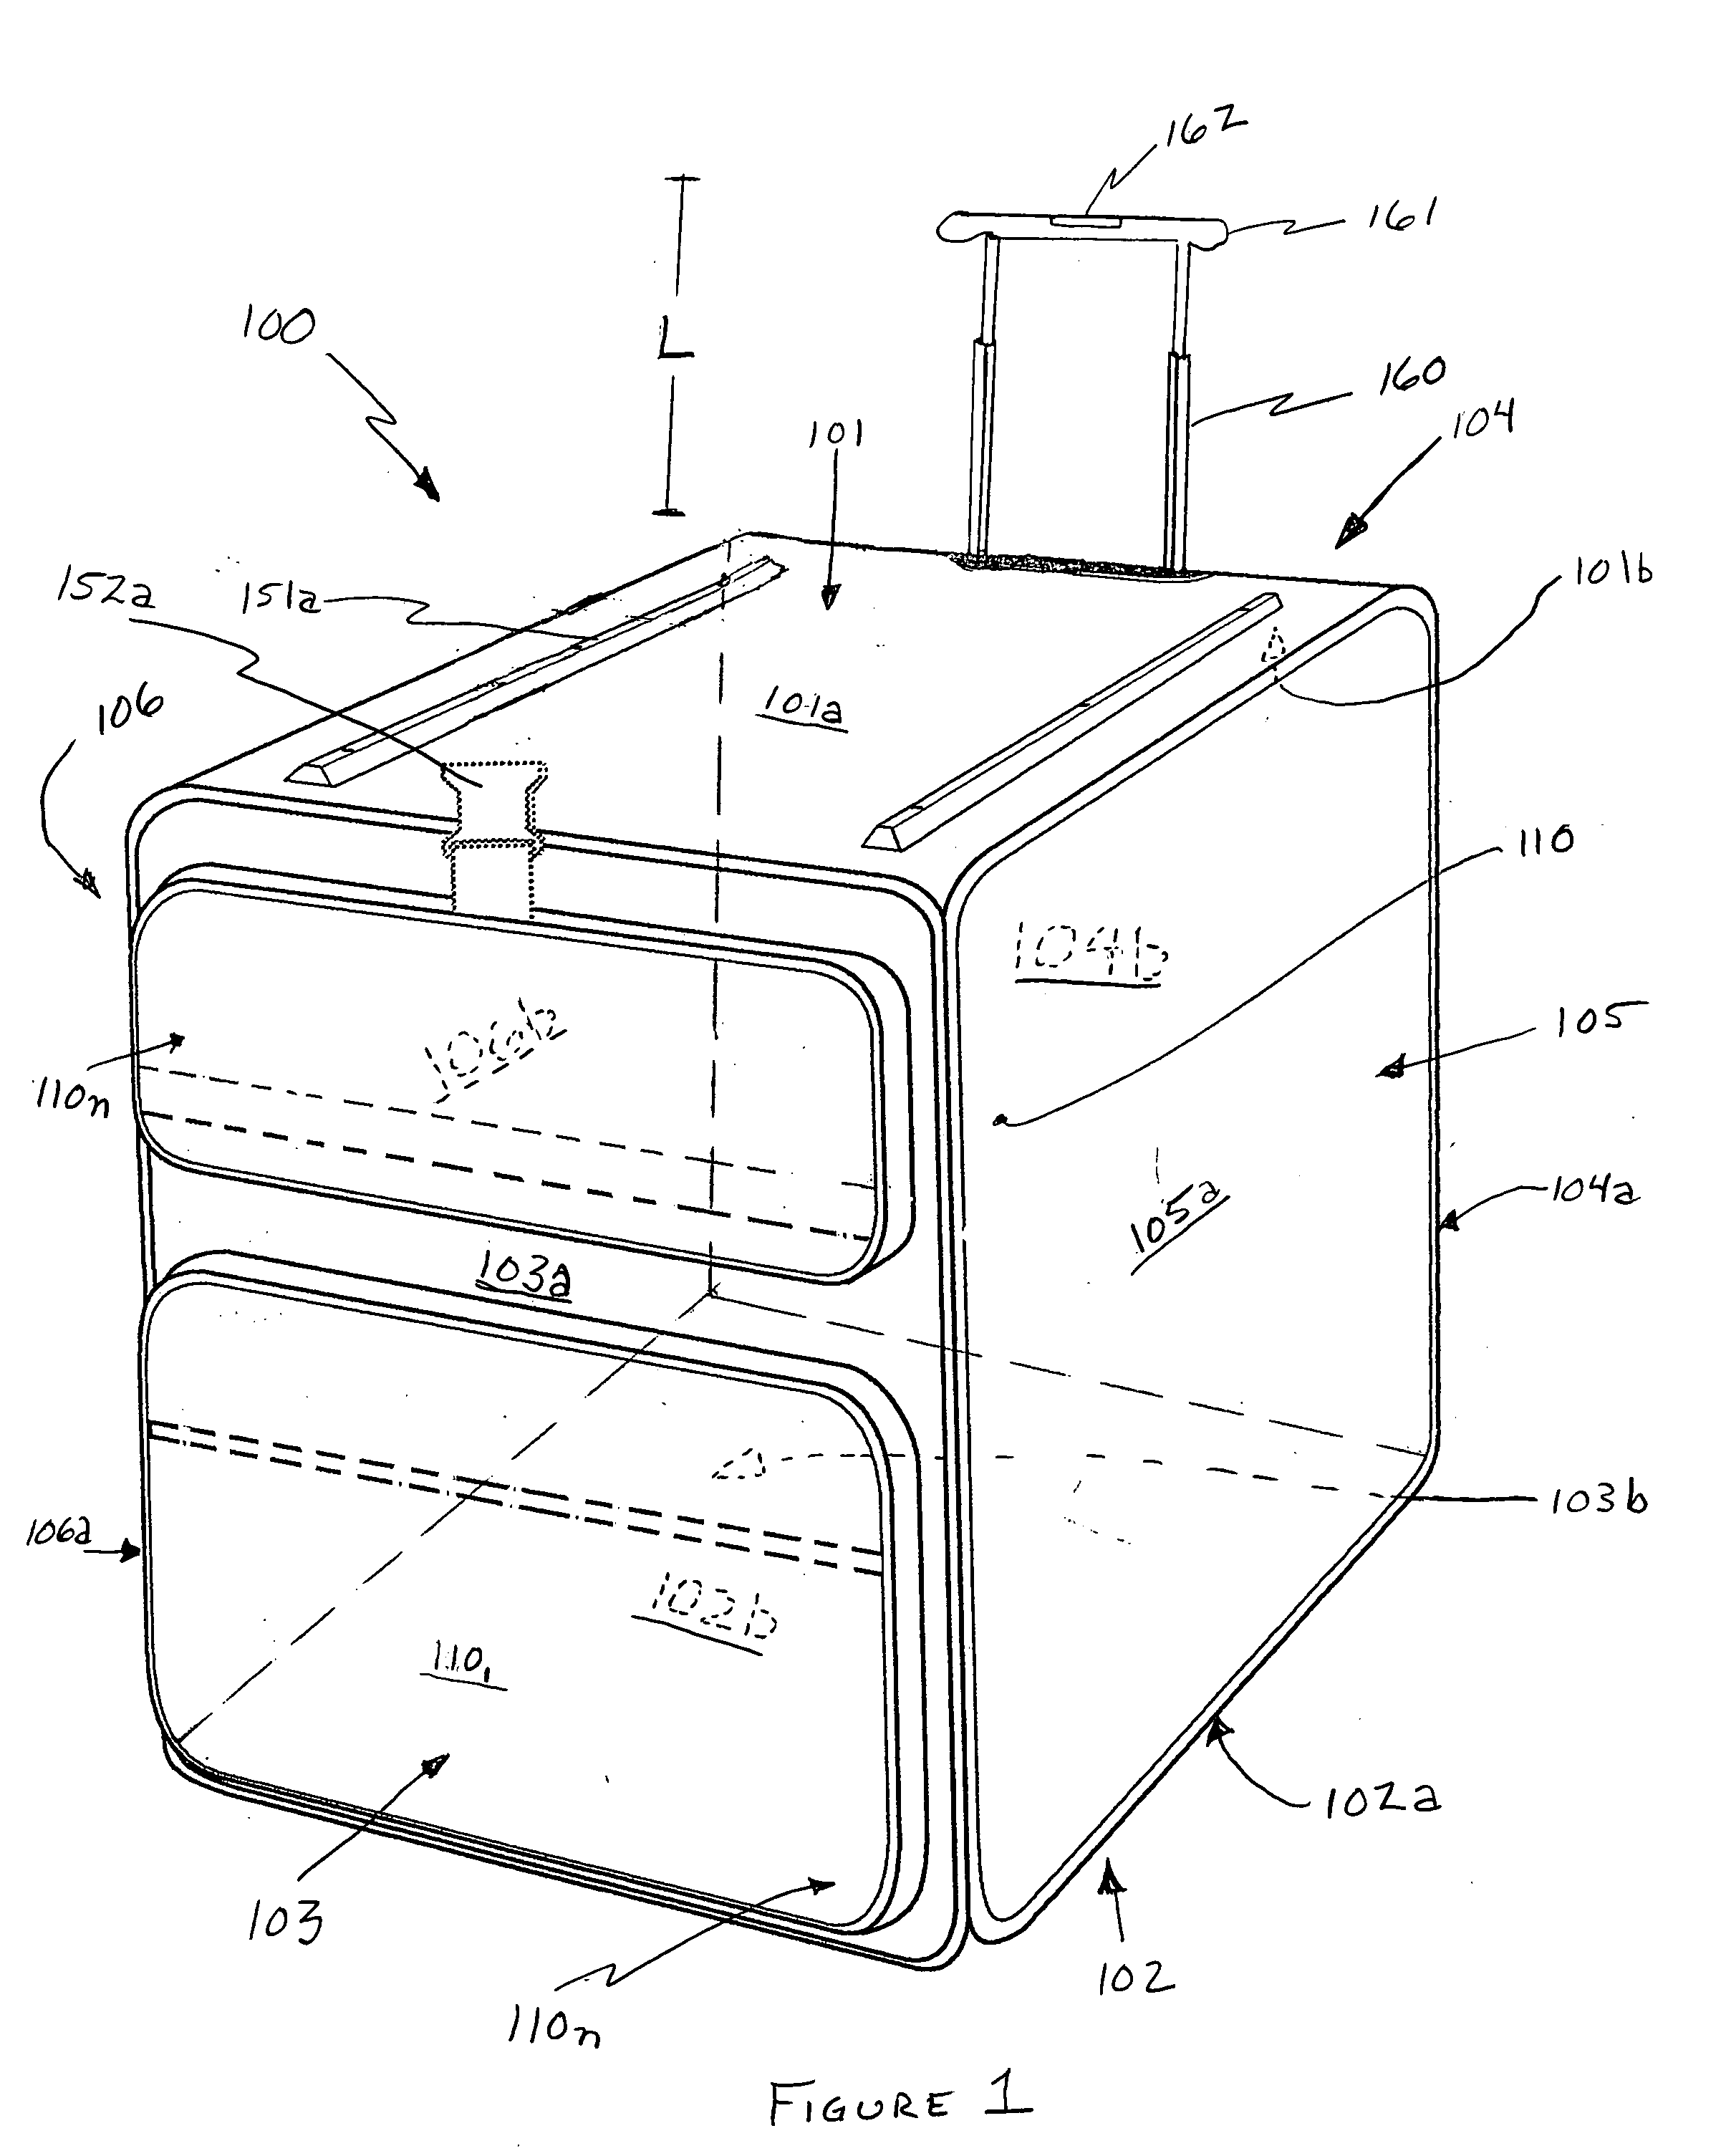 Modular luggage system